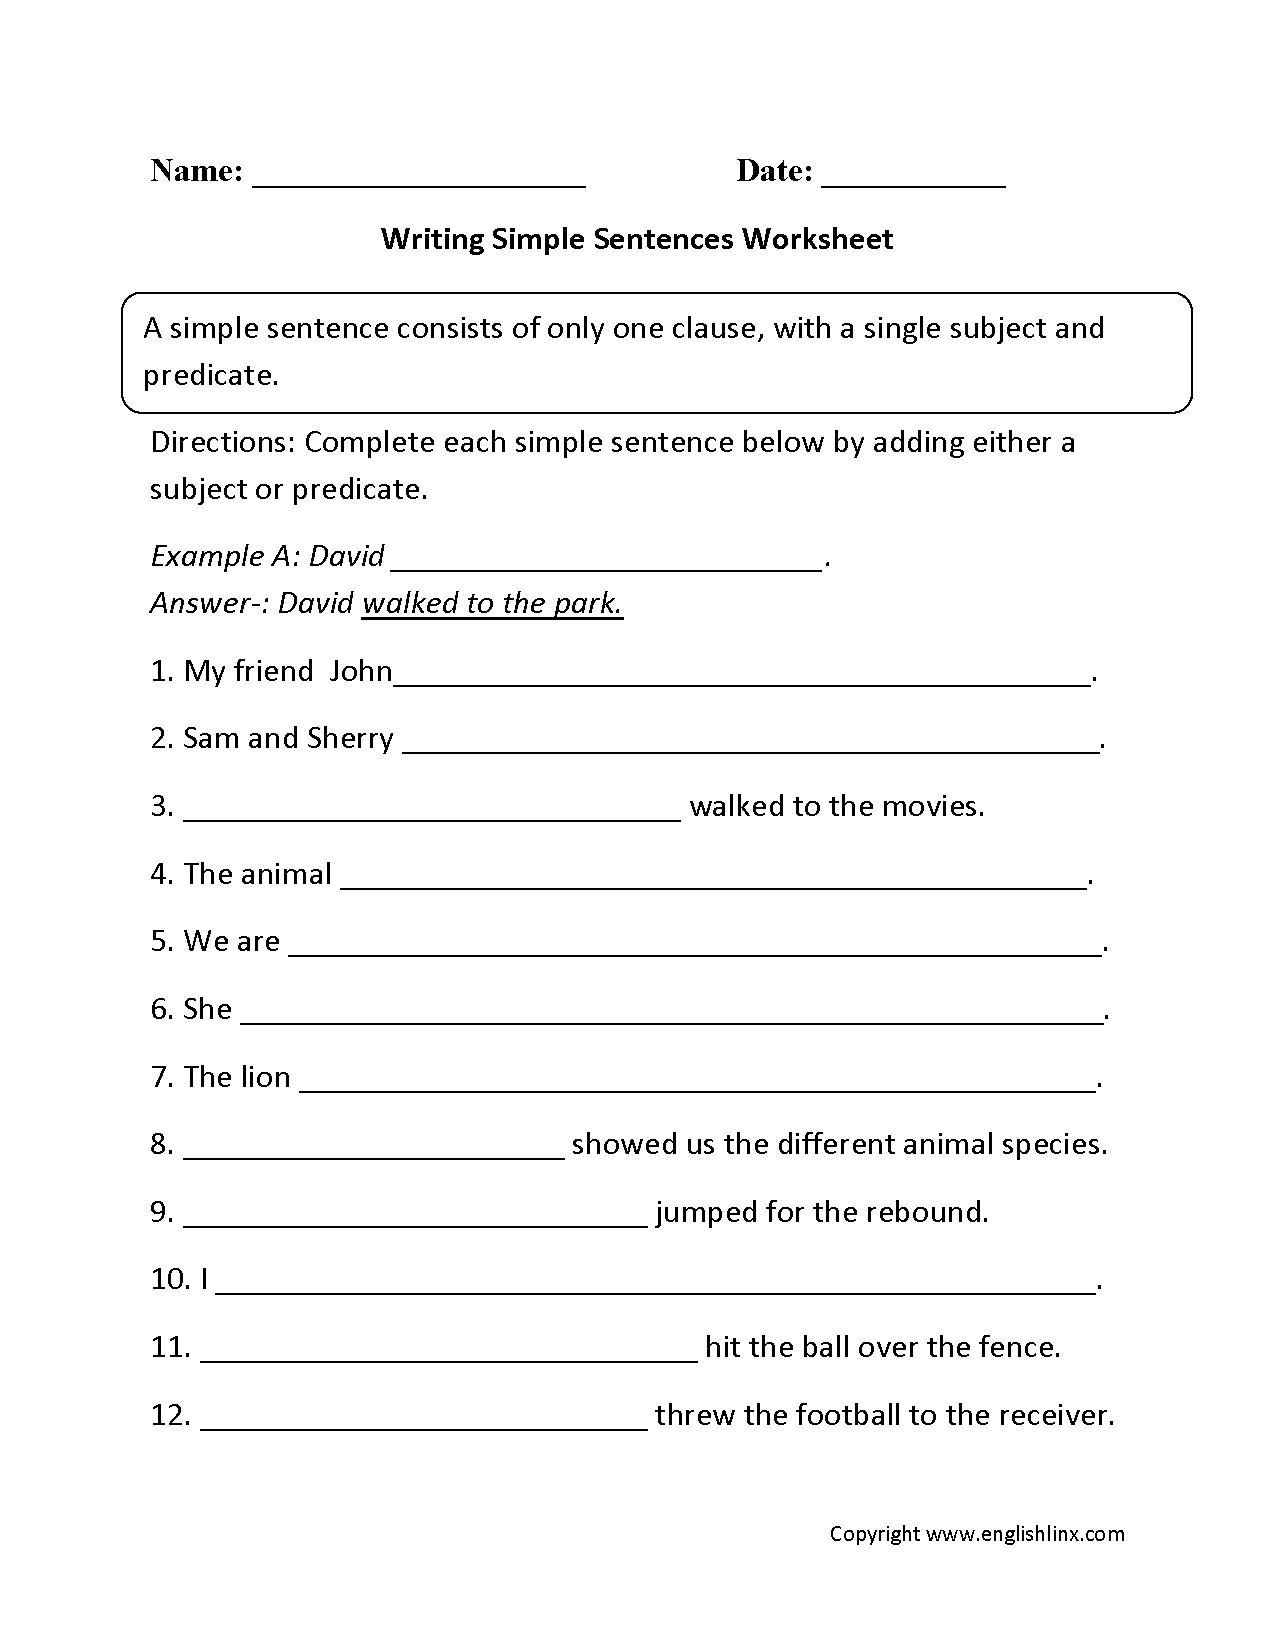 Writing Simple Sentences Worksheet Simple Sentences Worksheet 